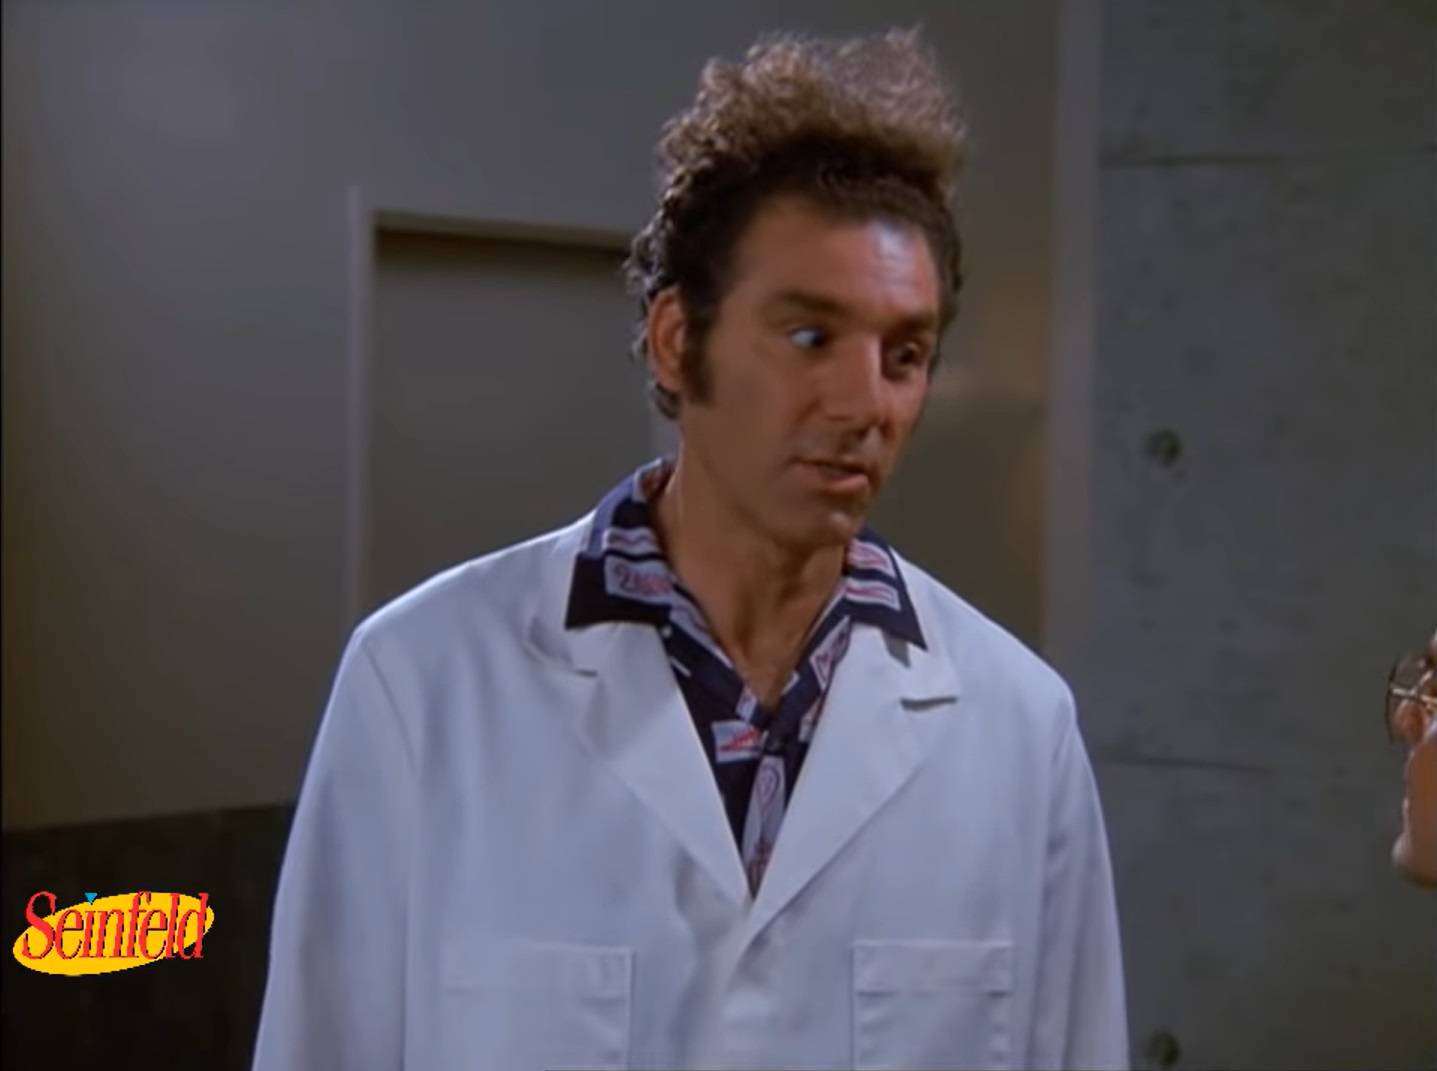 Kramer iz kultne serije Seinfeld stvarno postoji, a svoju je slavu komičar odlučio i dobro unovčiti